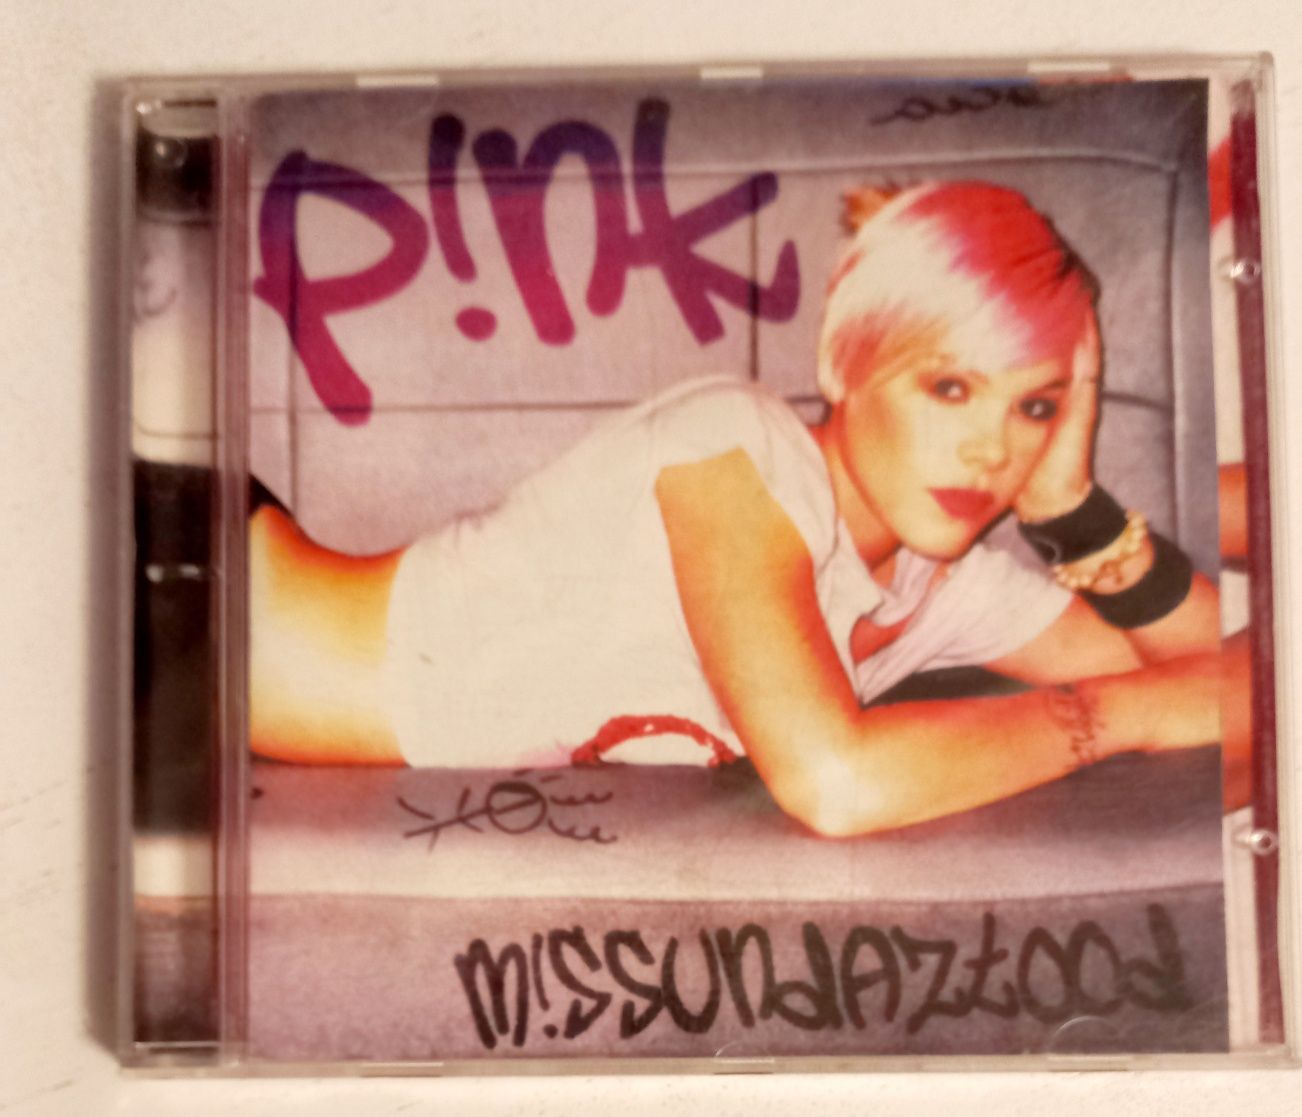 Pink  Missundaztood cd
"Missundaztood"Missundaztood"Missundaztood"Miss